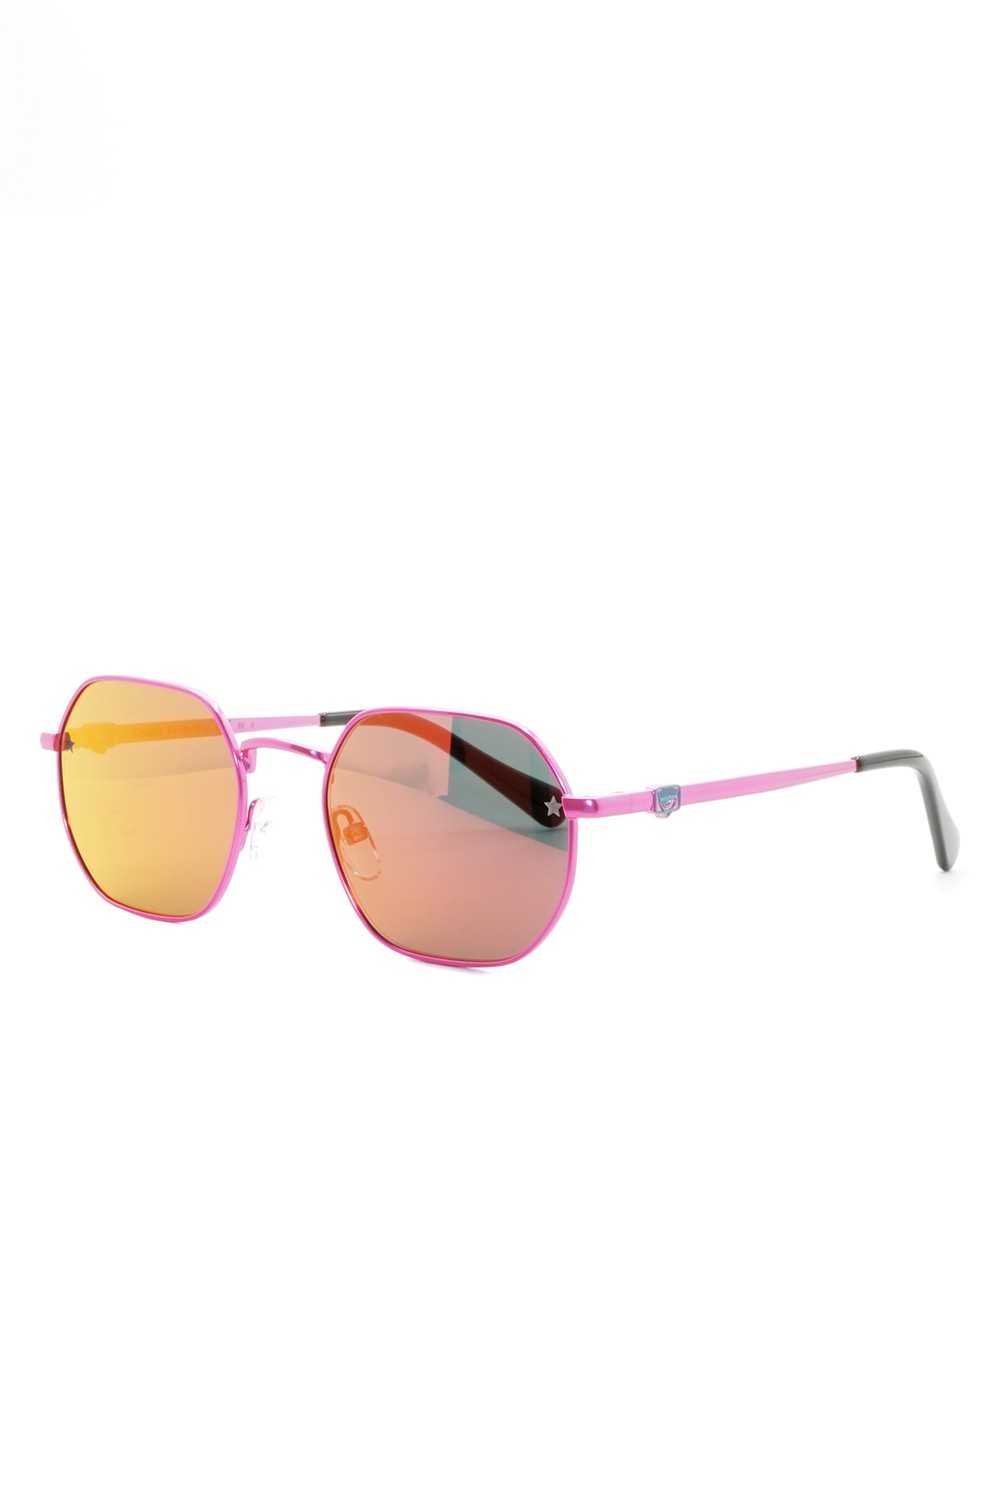 Chiara Ferragni - Occhiali da sole in metallo esagonali per ragazza rosa -